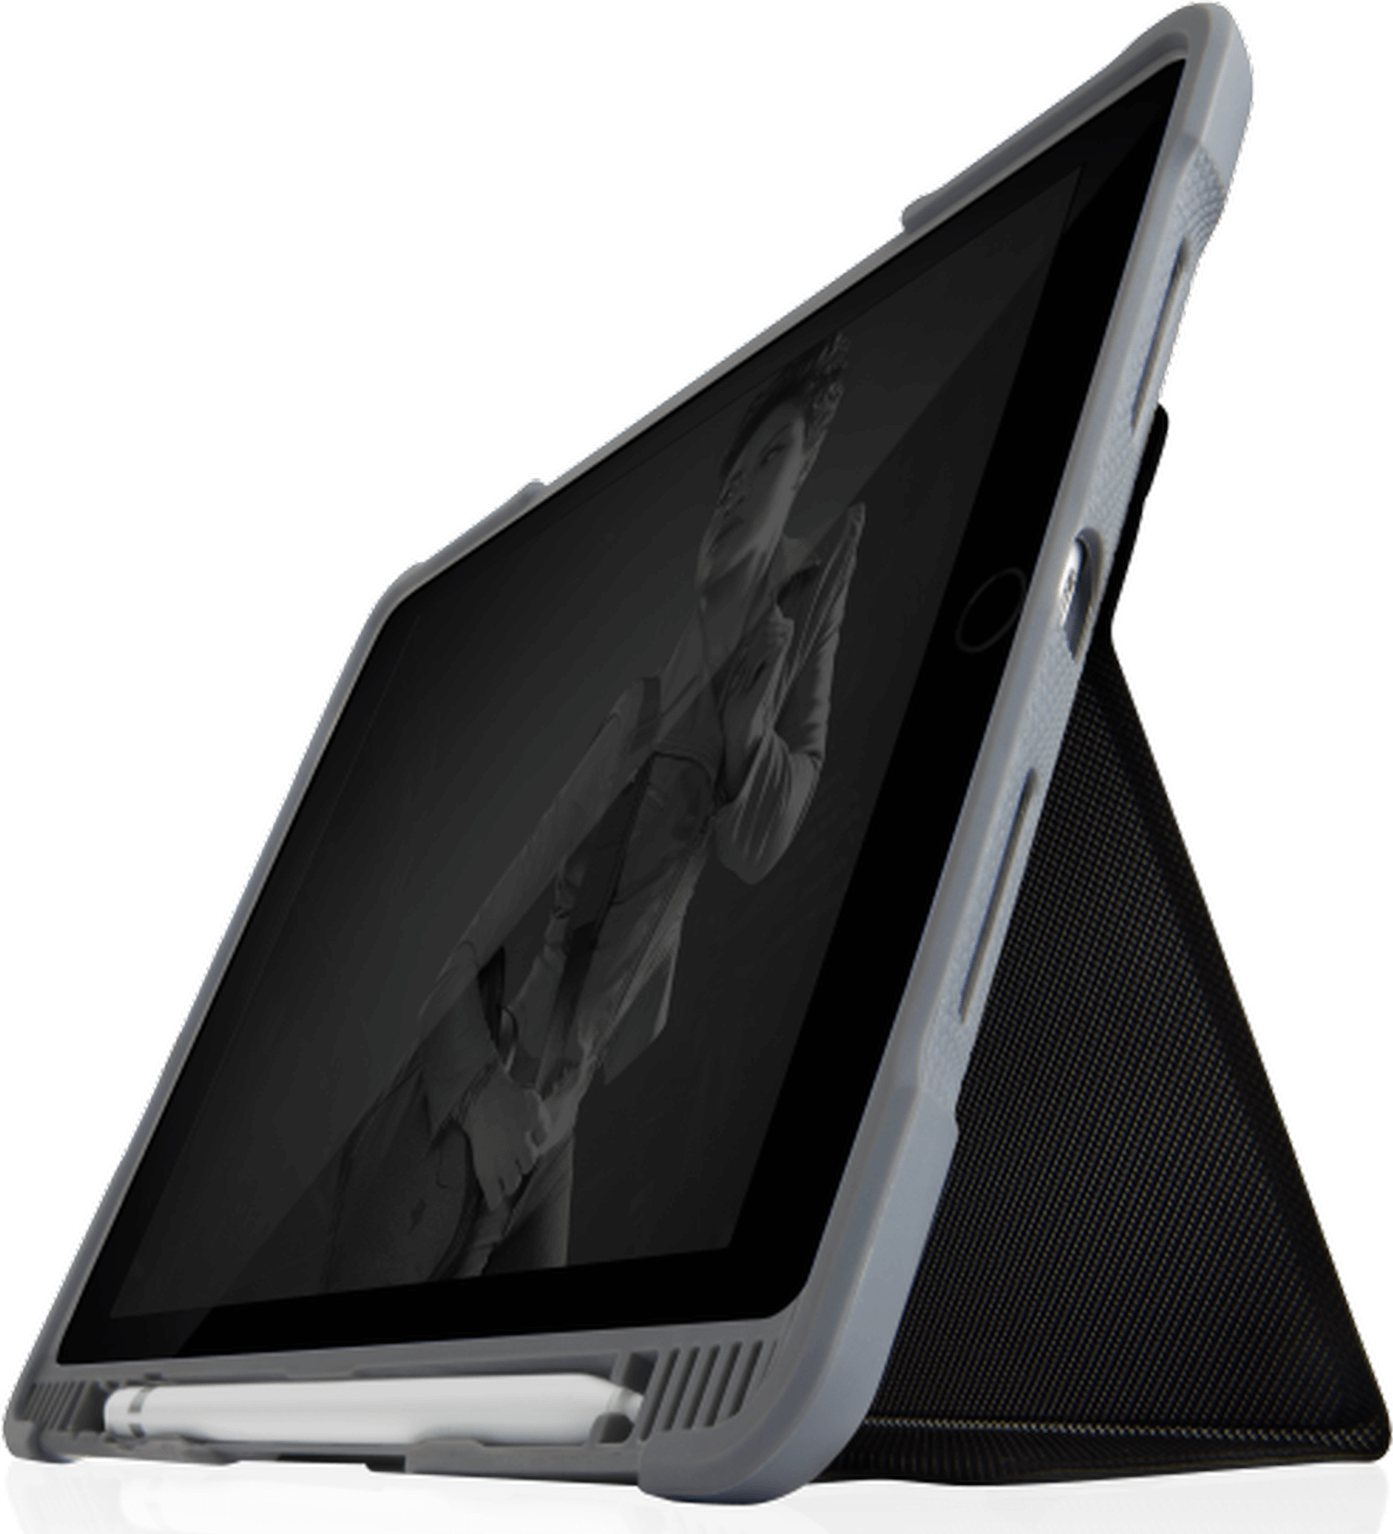 STM Dux Plus DUO Case | Apple iPad 10,2" (2021 - 2019) | schwarz/transparent | STM-222-236JU-01 (STM-222-236JU-01)